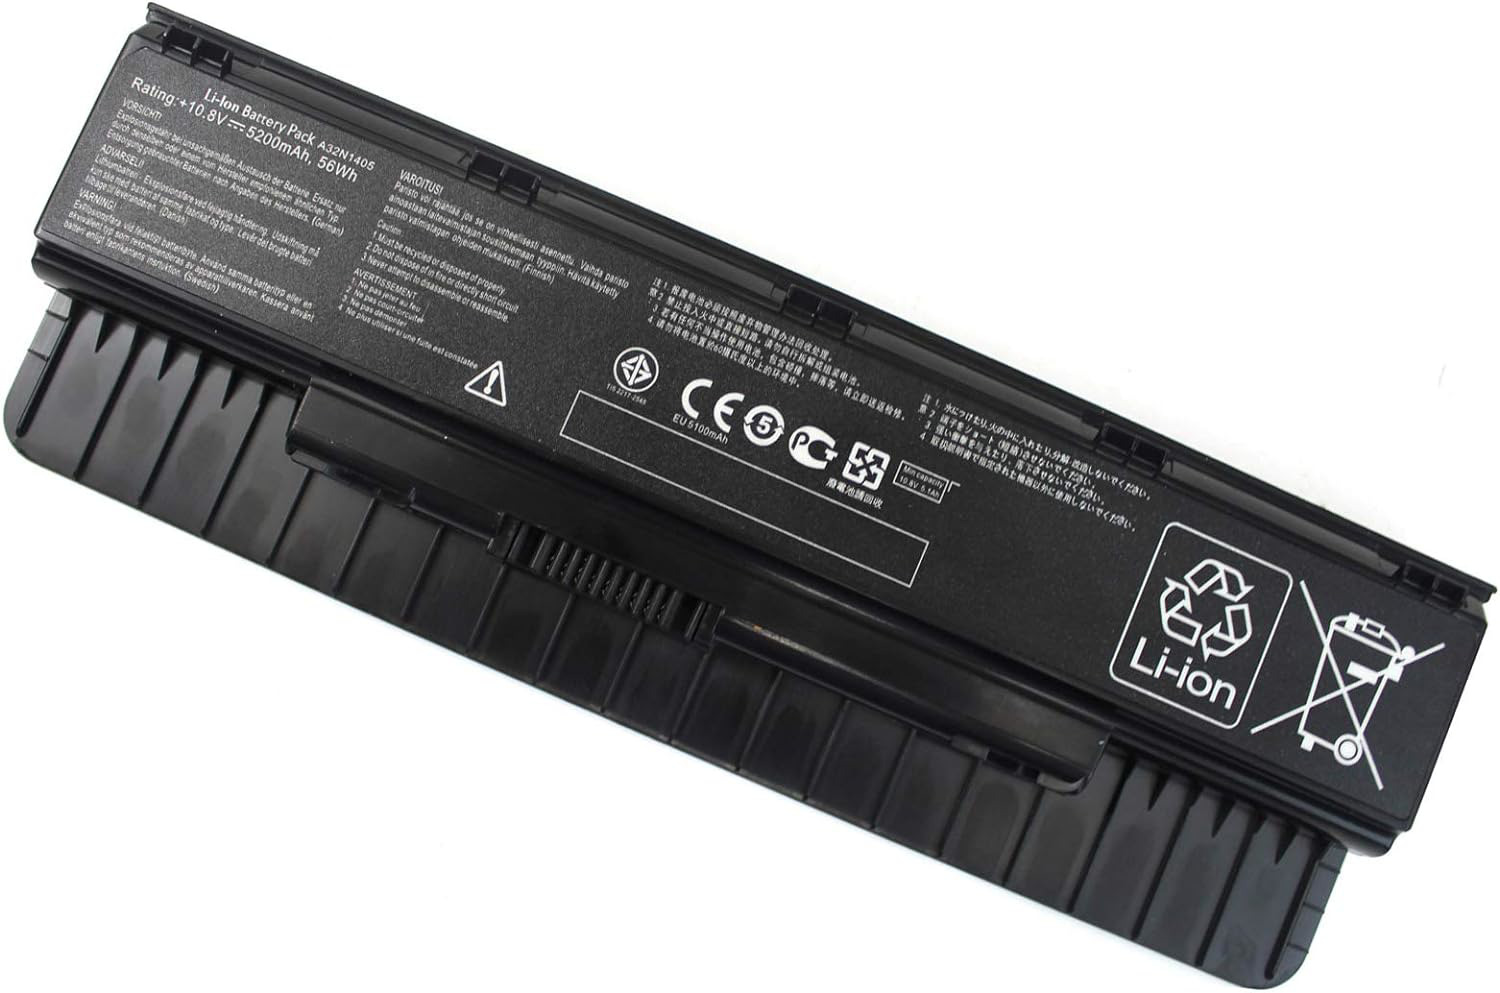 DMKAOLLK A32N1405 A32LI9H Laptop Battery for Asus GL551 GL551J GL551JW GL551JW-D